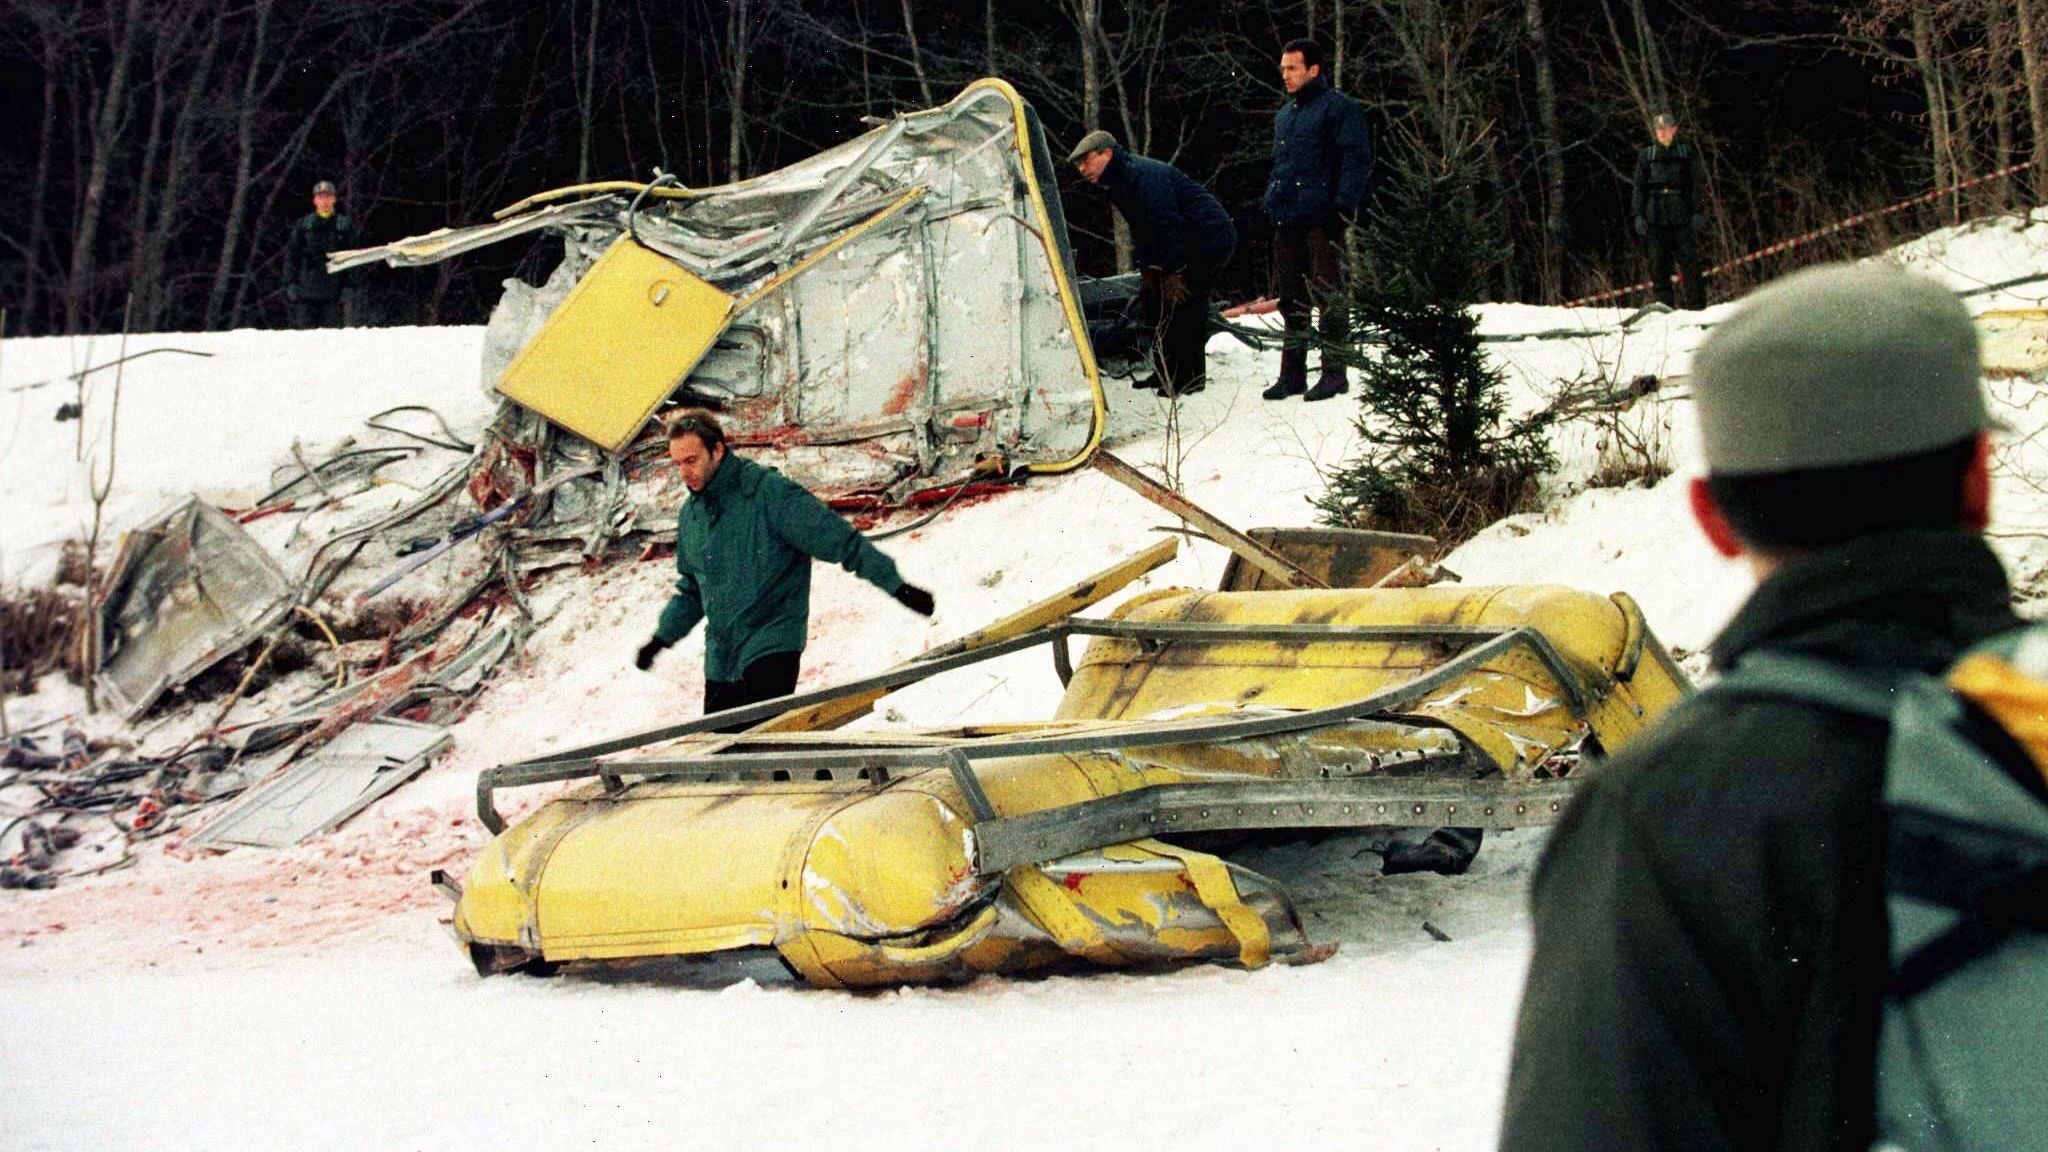 Dolomiten: Ein Kampfjet rast in eine Seilbahn, 20 Menschen sterben - und  niemand ist schuld